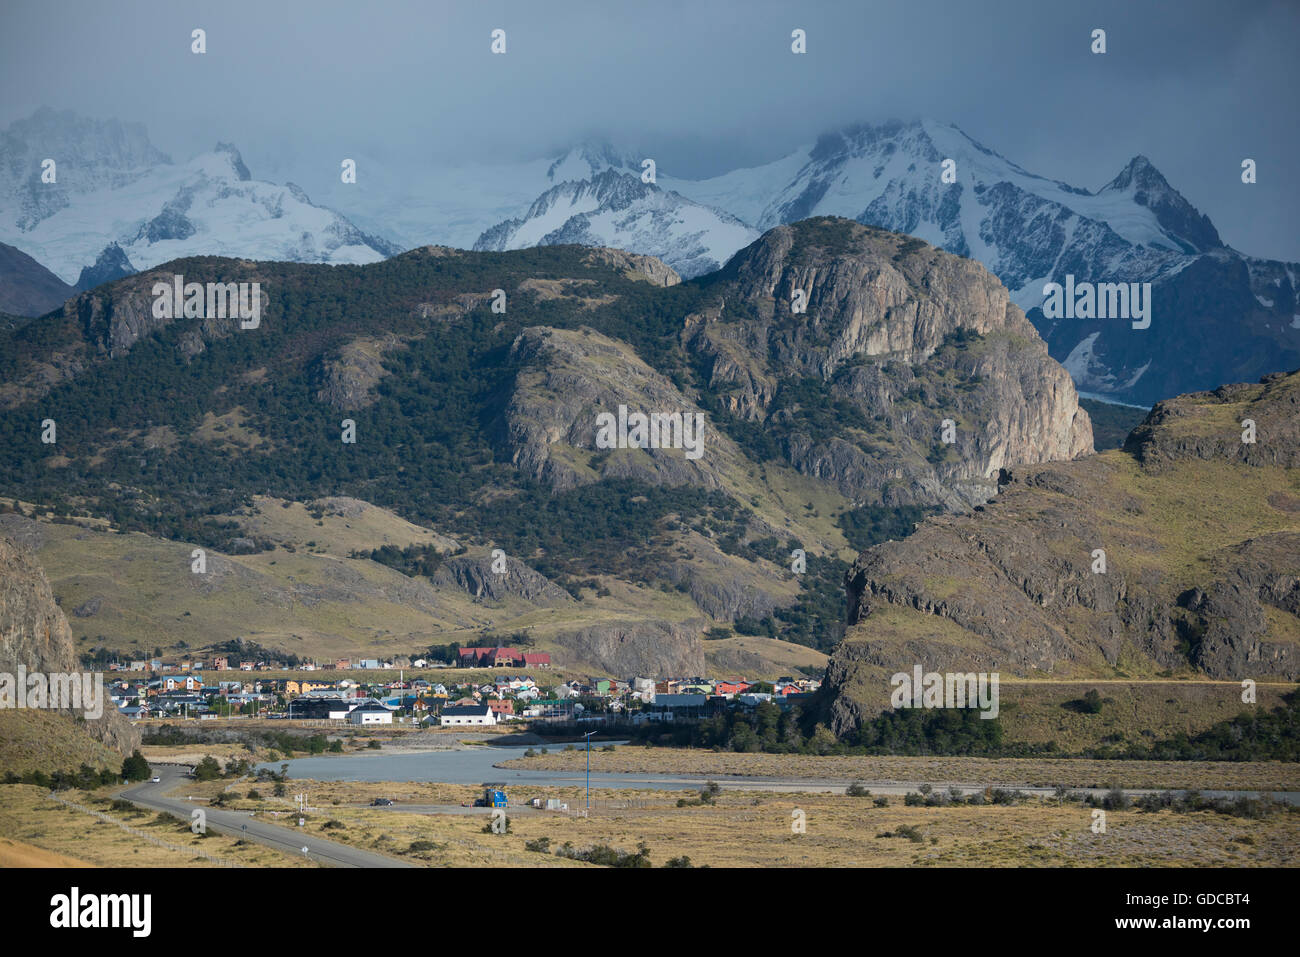 South America,Argentina,Patagonia,Santa Cruz,El Chalten,town of El Chalten Stock Photo